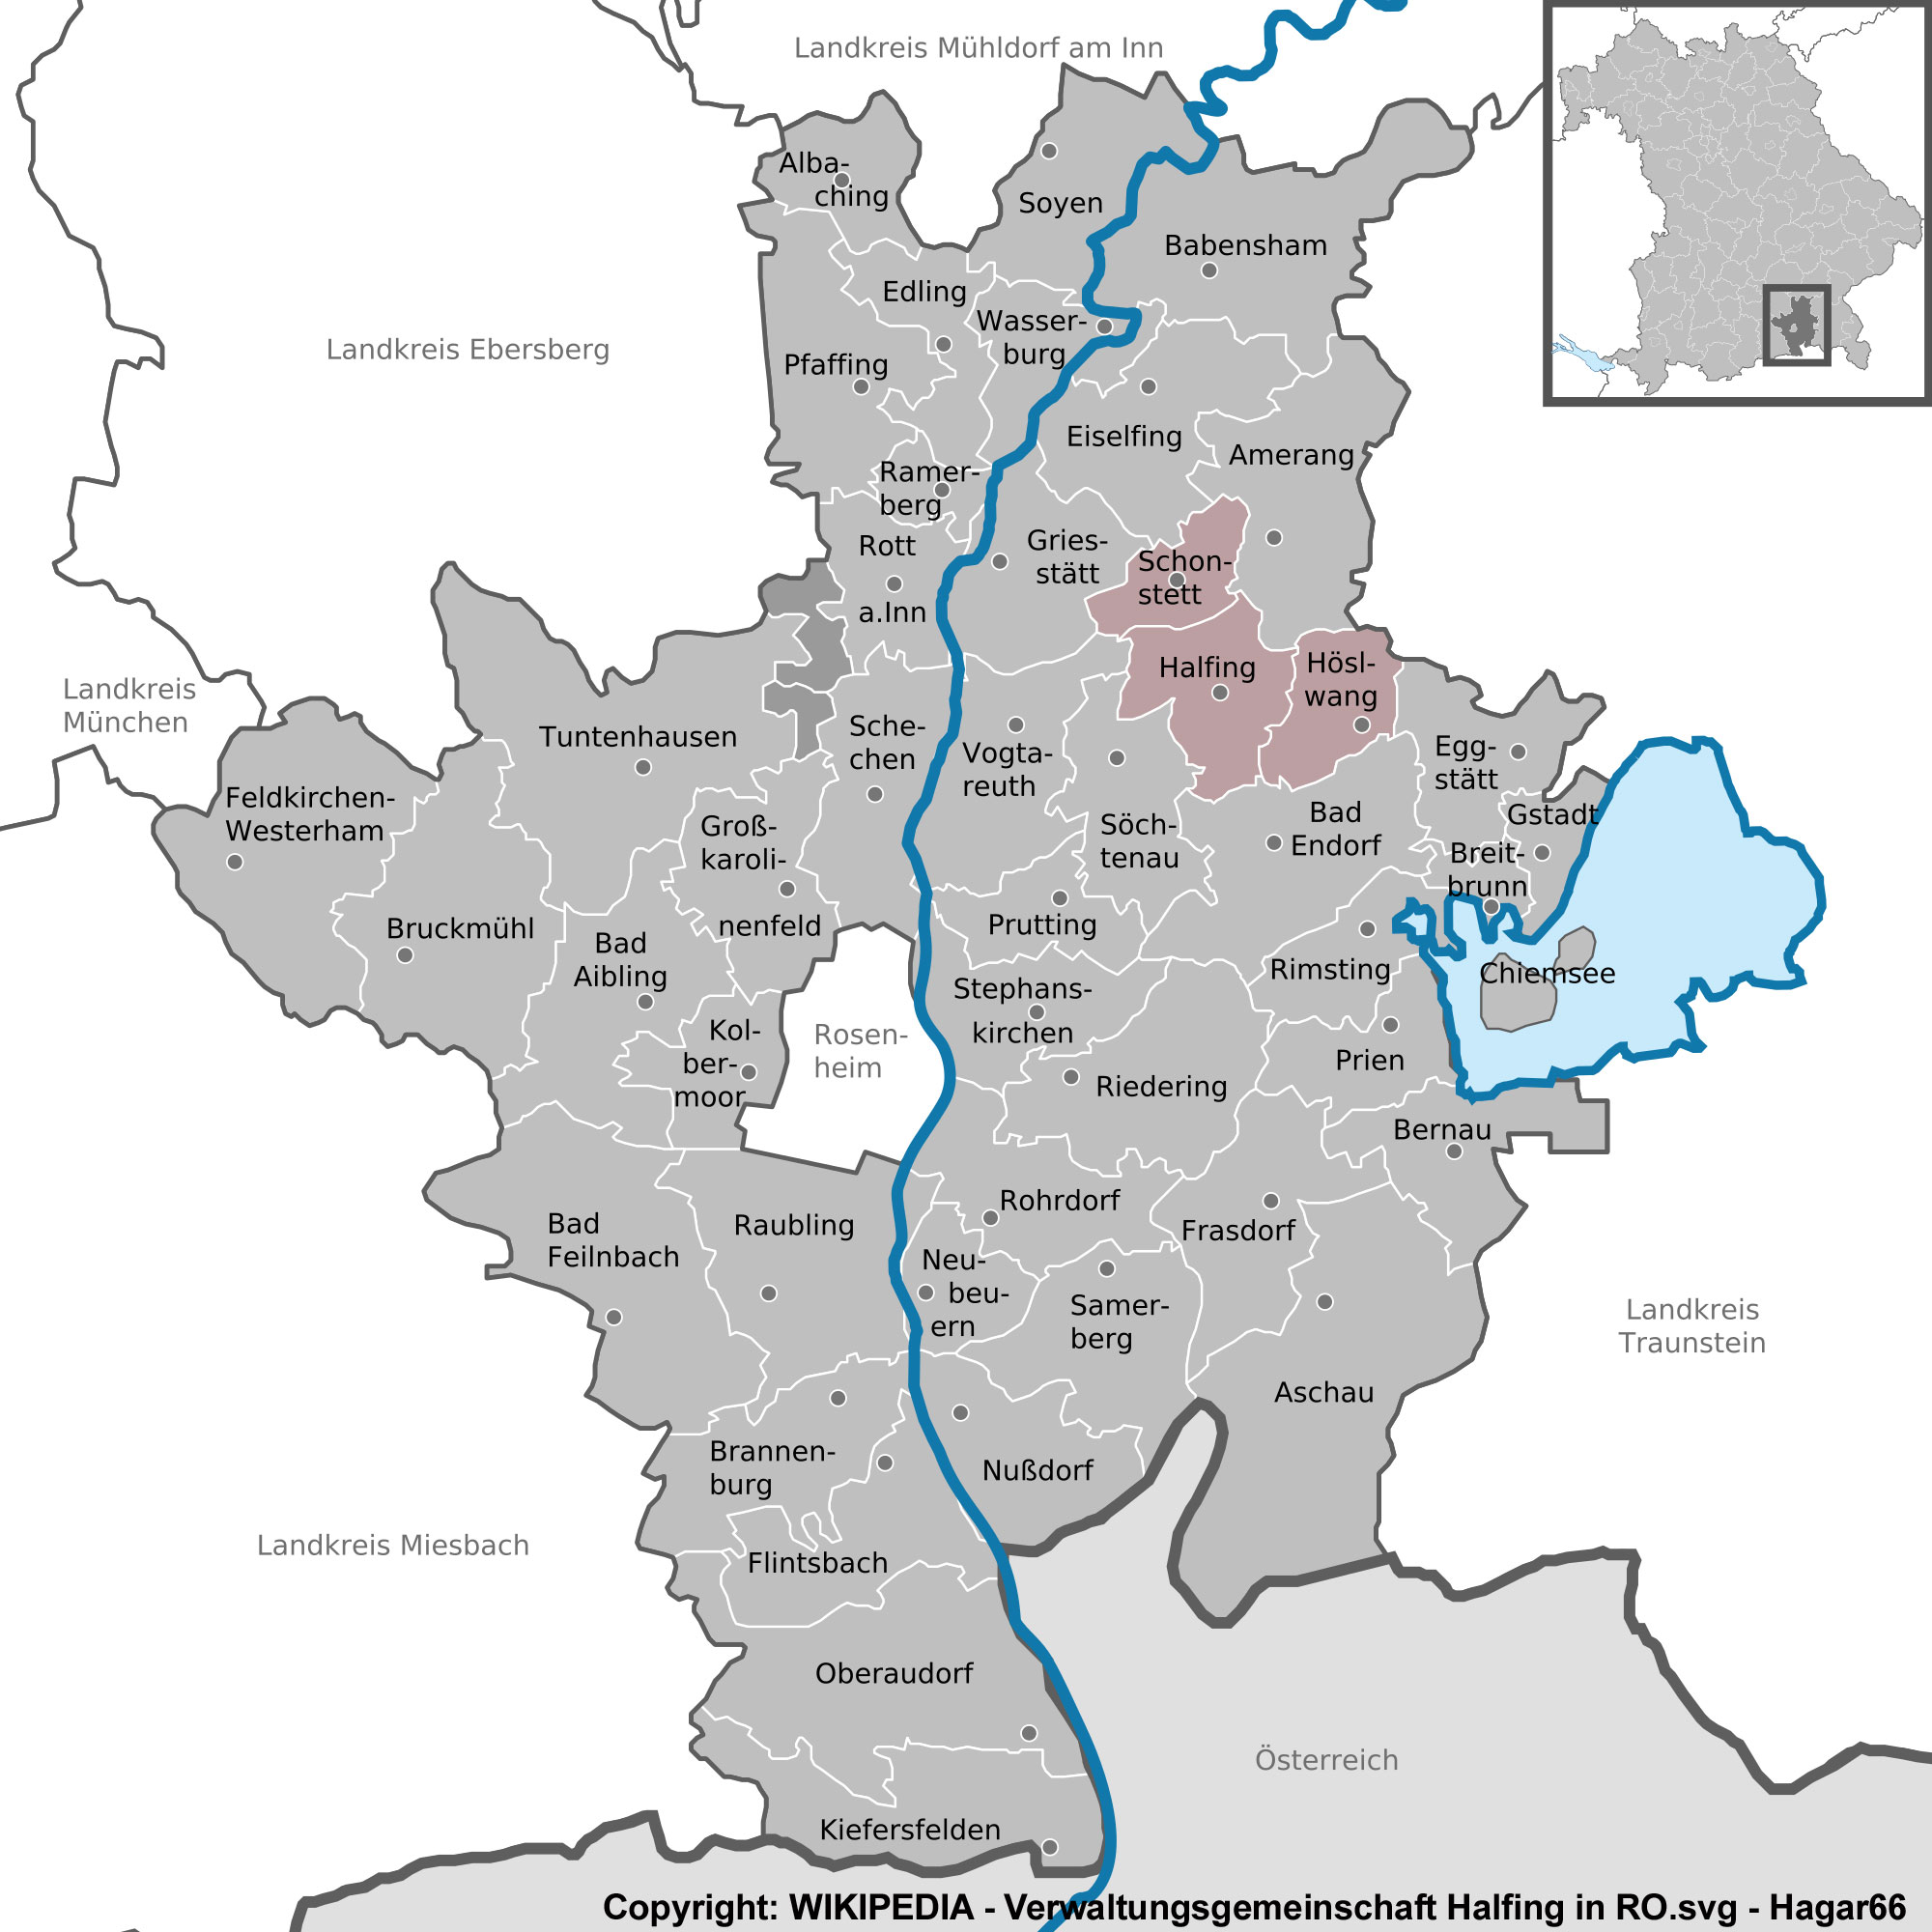 Karte aus WIKIPEDIA mit der Lage der Verwaltungsgemeinschaft im Landkreis Rosenheim